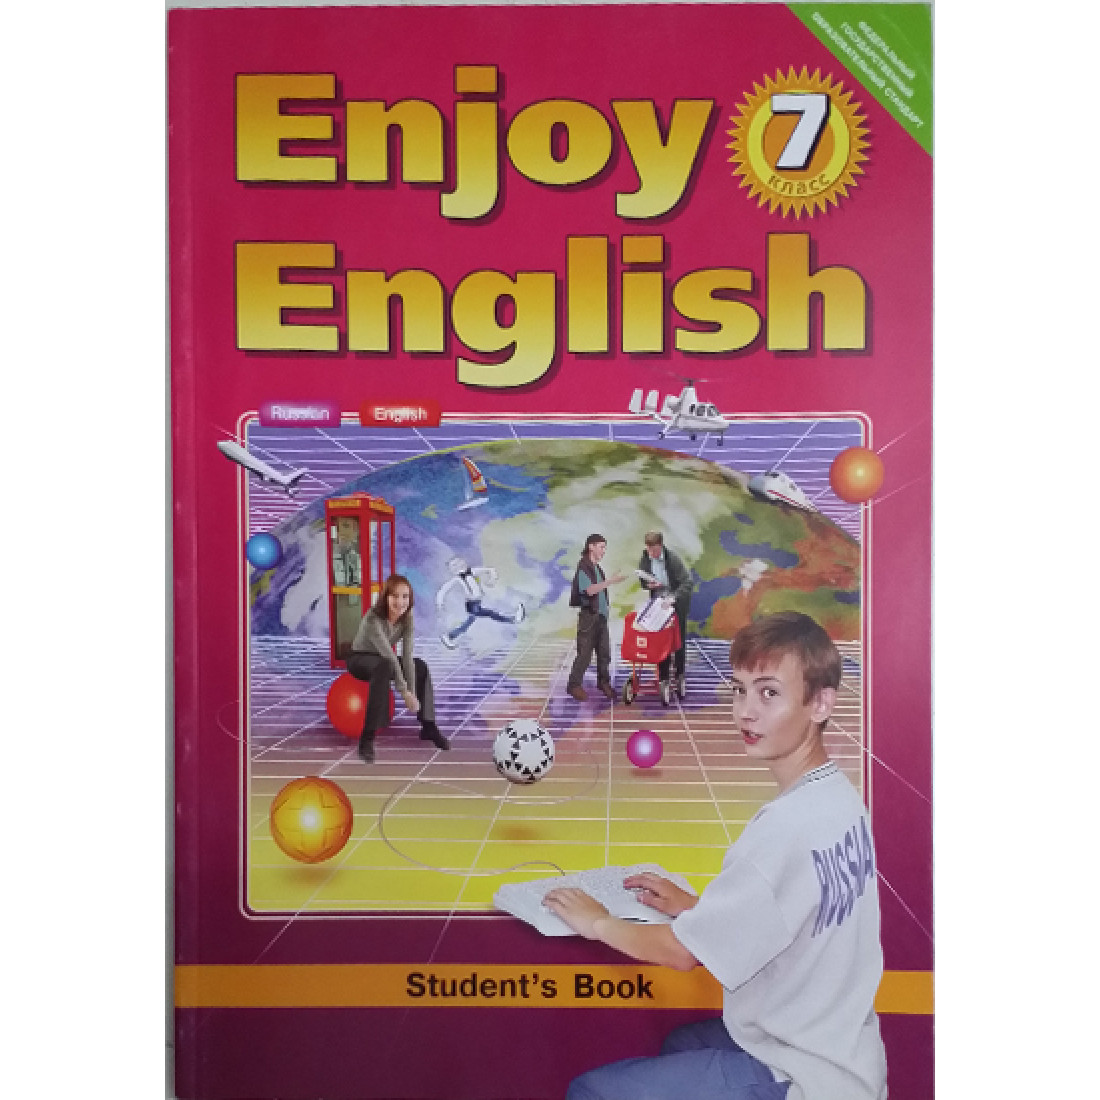 Английский энджой инглиш 7. Enjoy English 7 класс. Английский язык. Учебник. Enjoy English учебник. Учебник английского enjoy English.